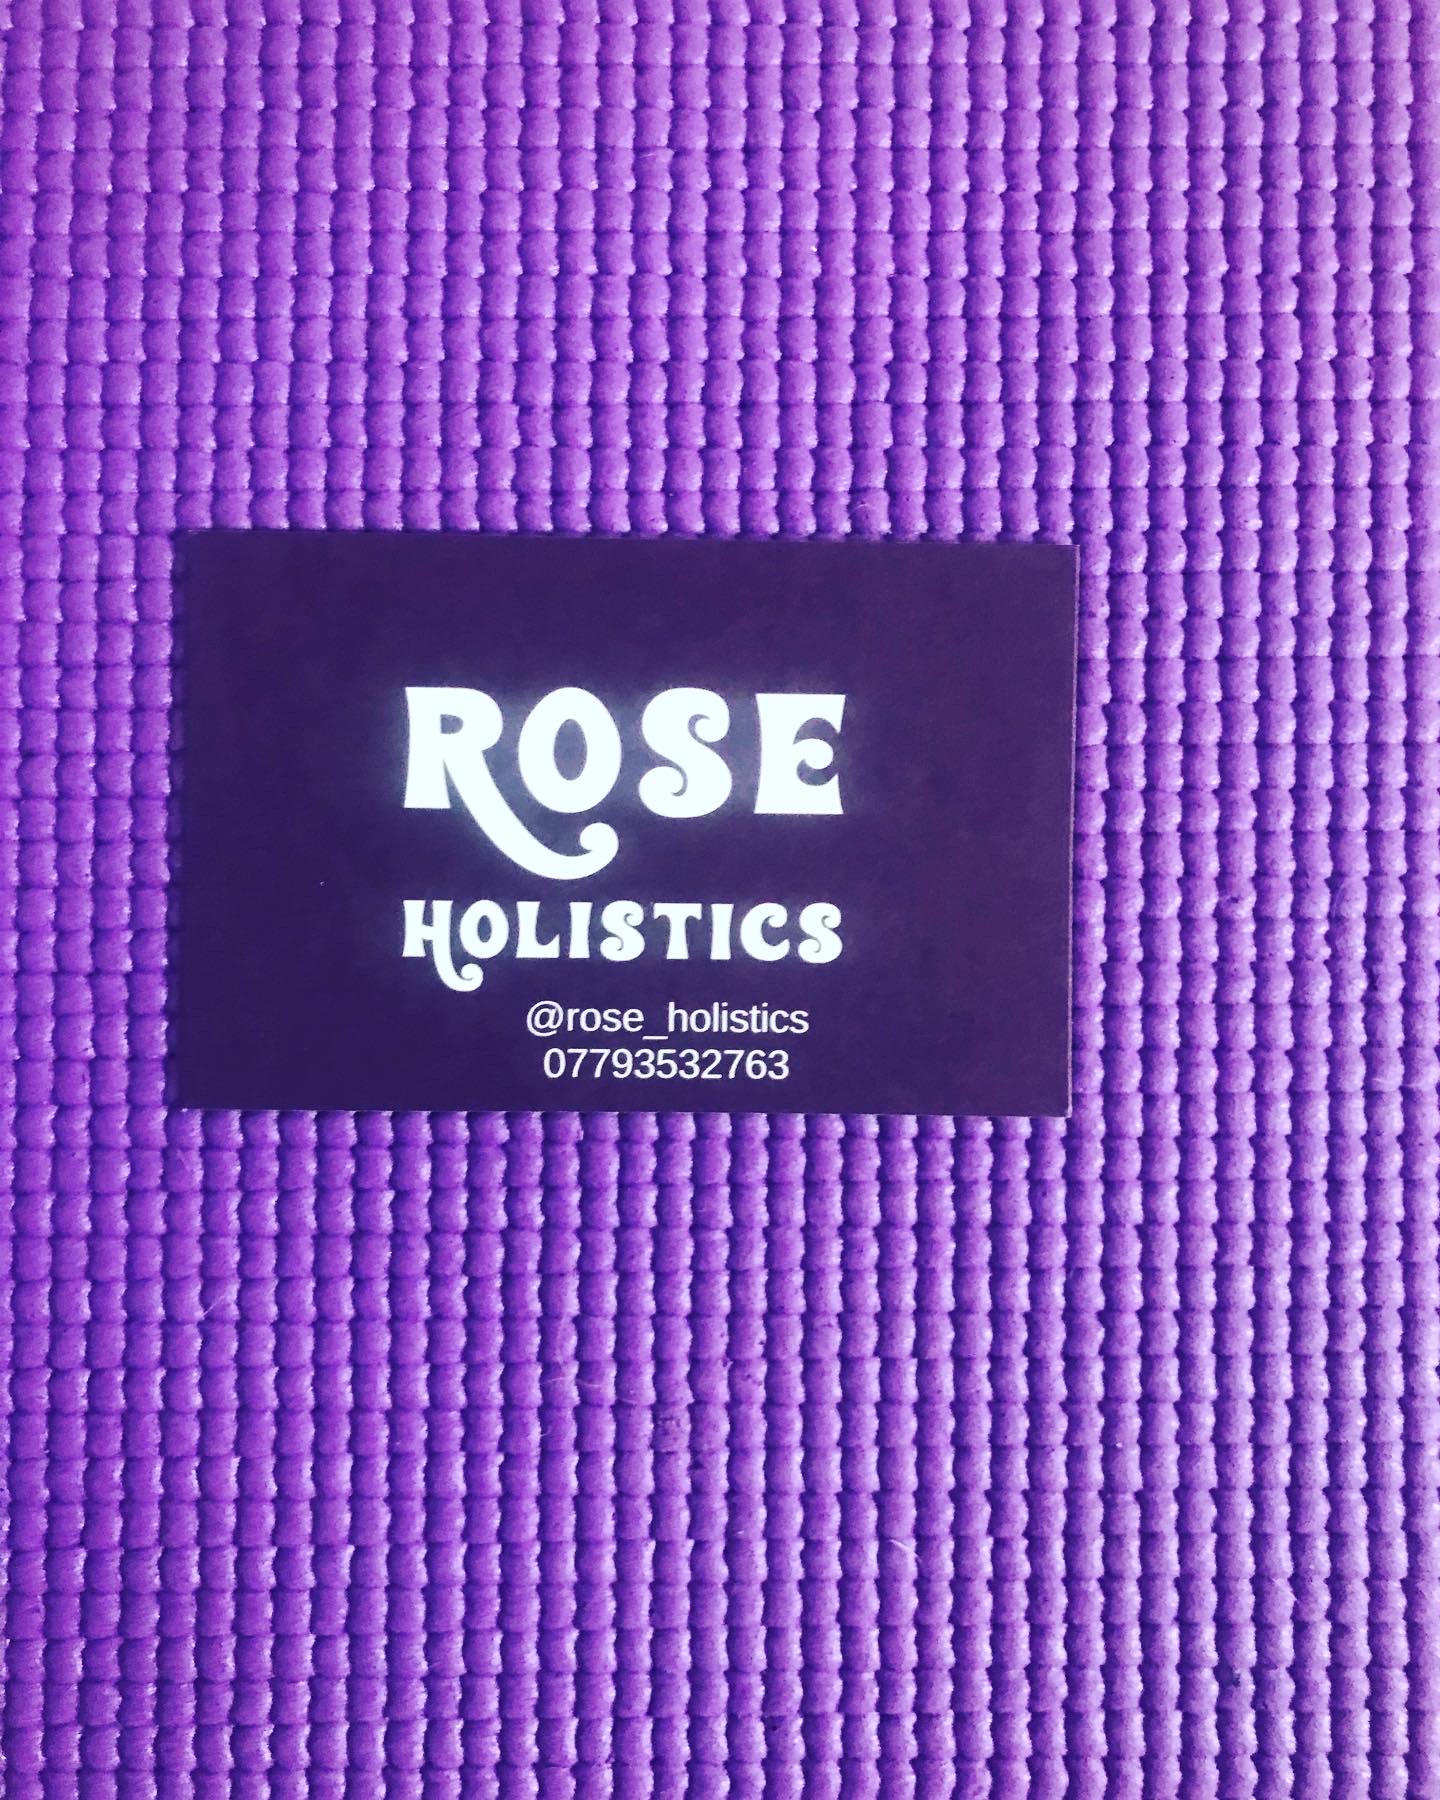 Rose Holistics 